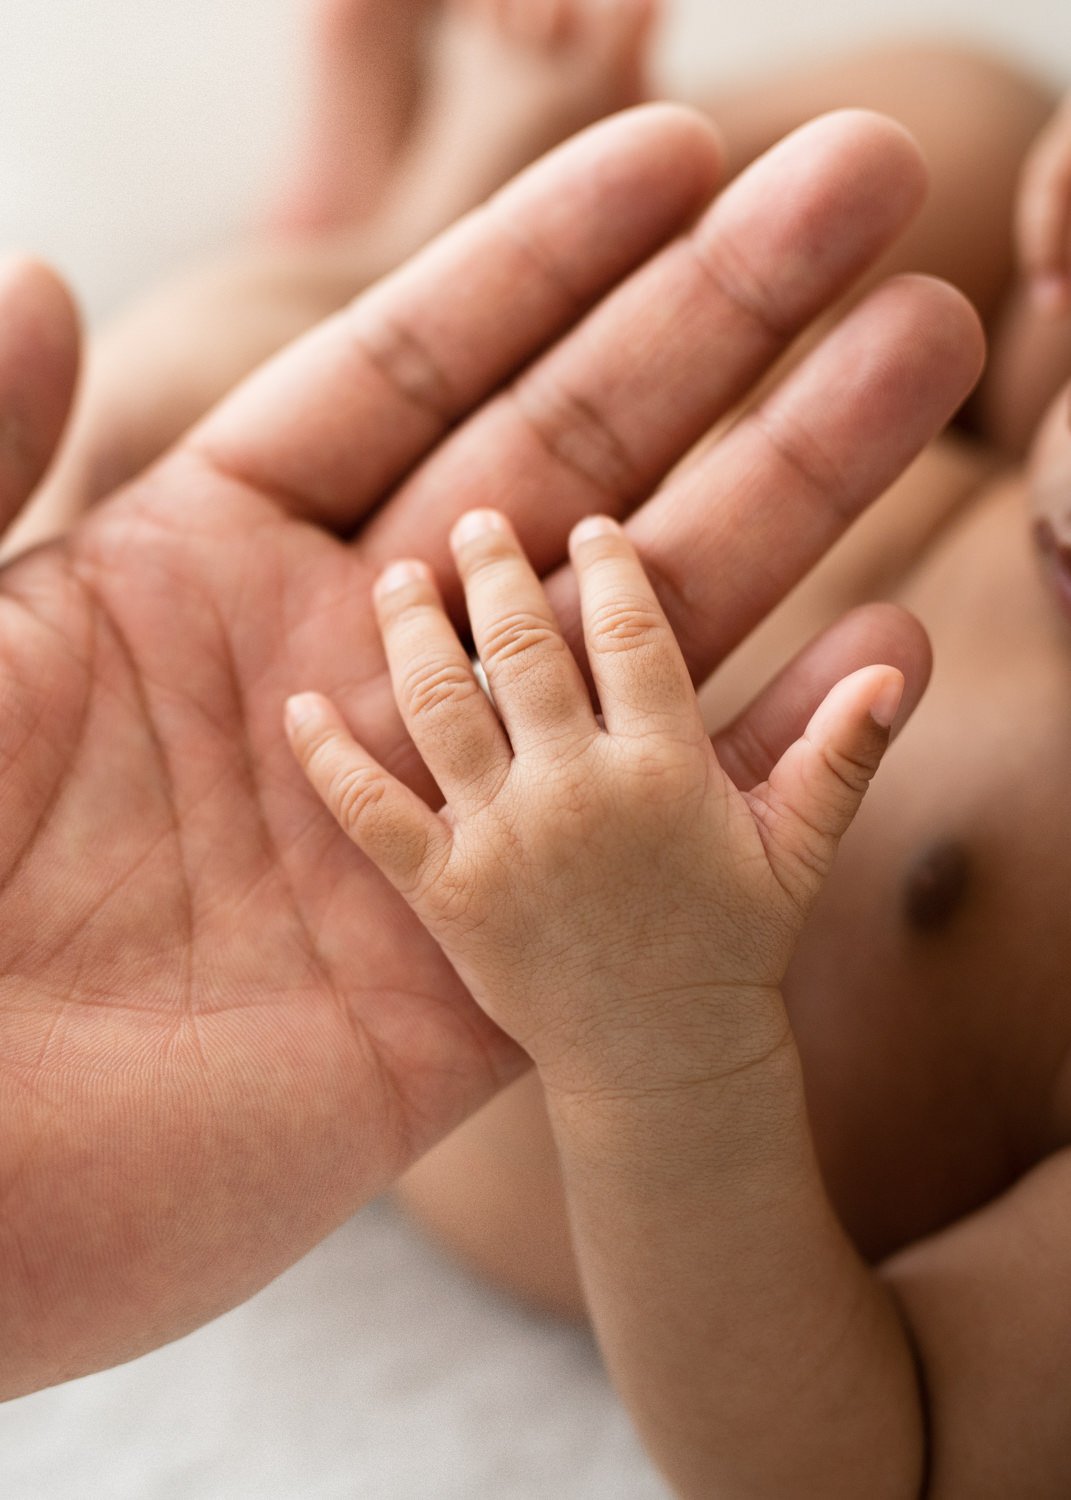 Baby and Parent Hands Closeup